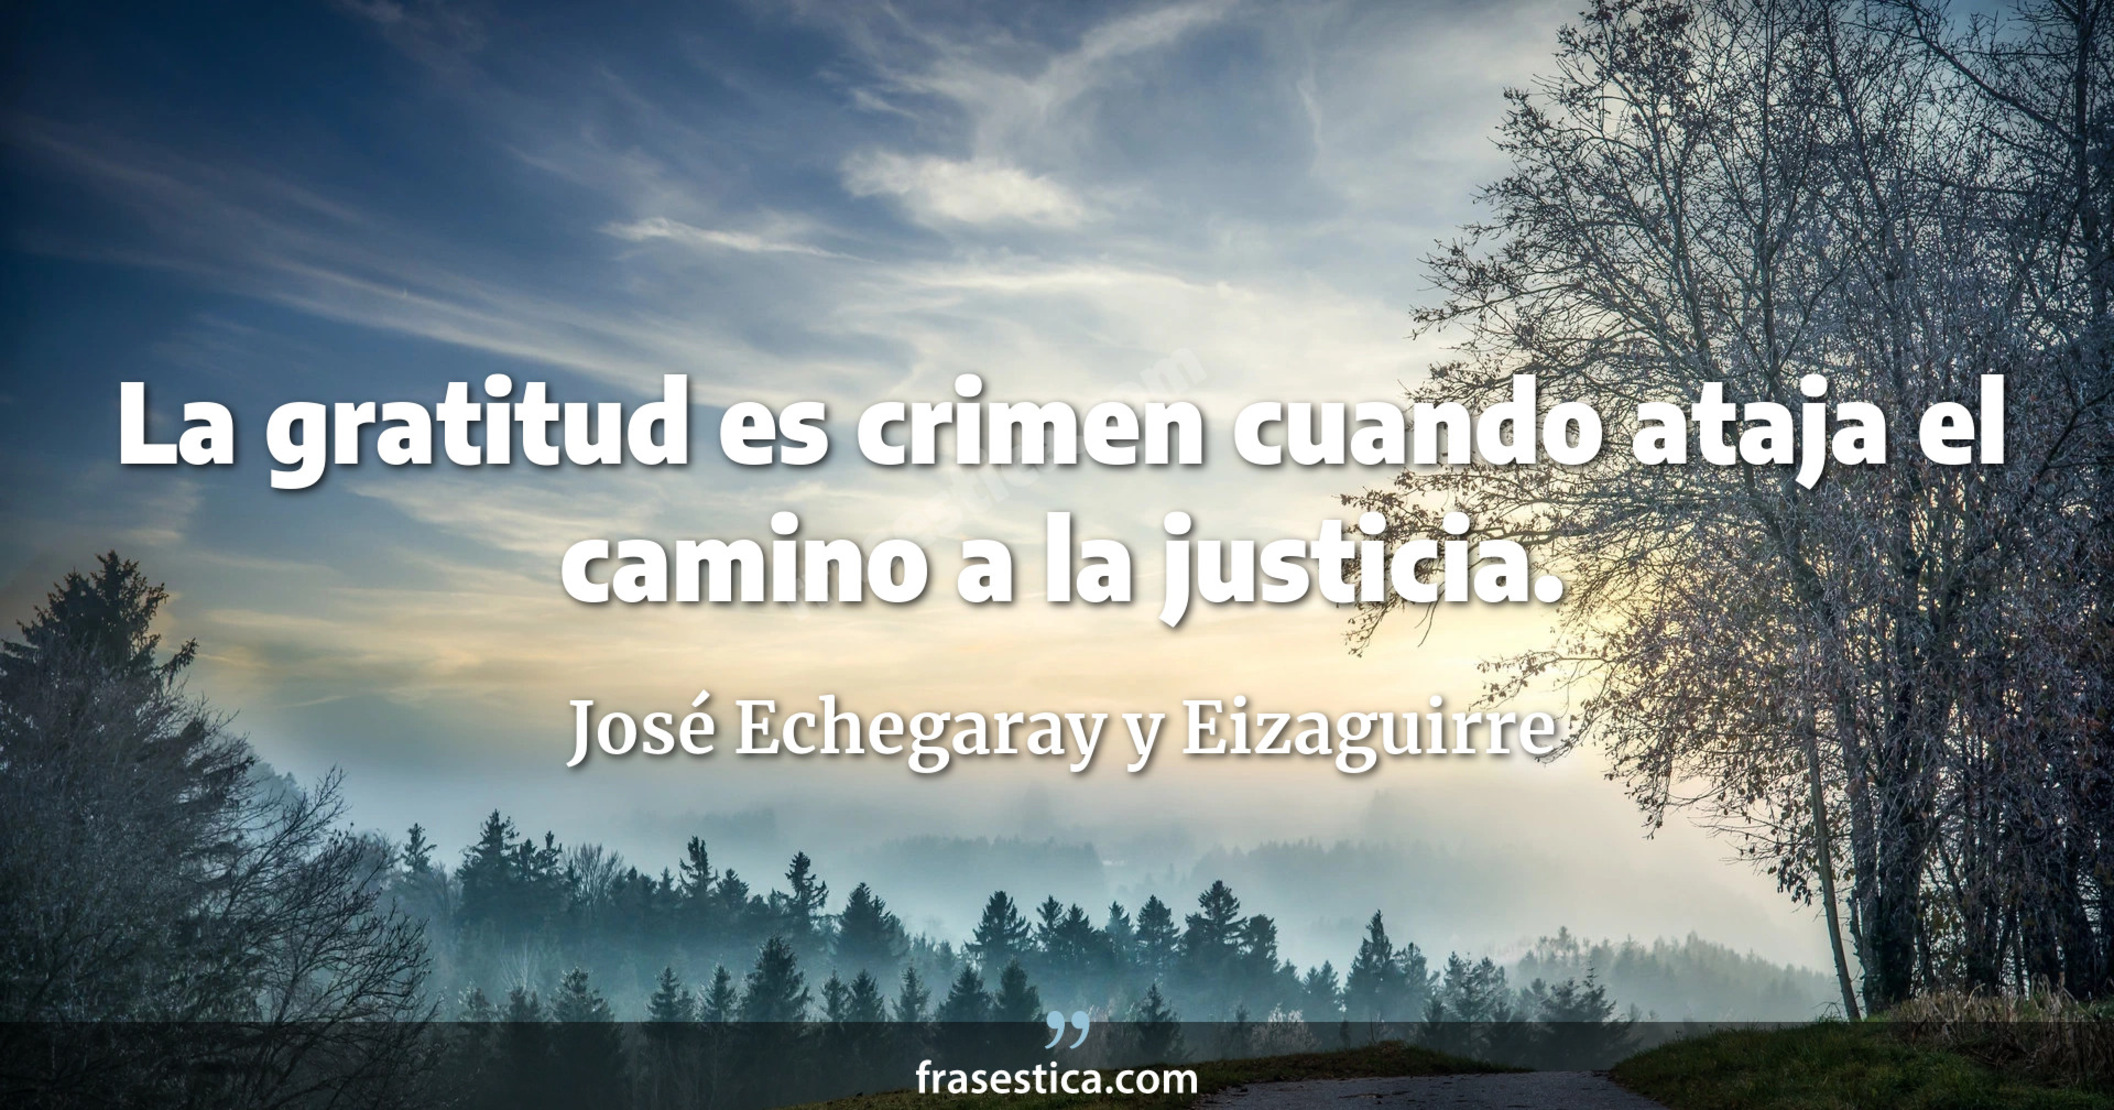 La gratitud es crimen cuando ataja el camino a la justicia. - José Echegaray y Eizaguirre